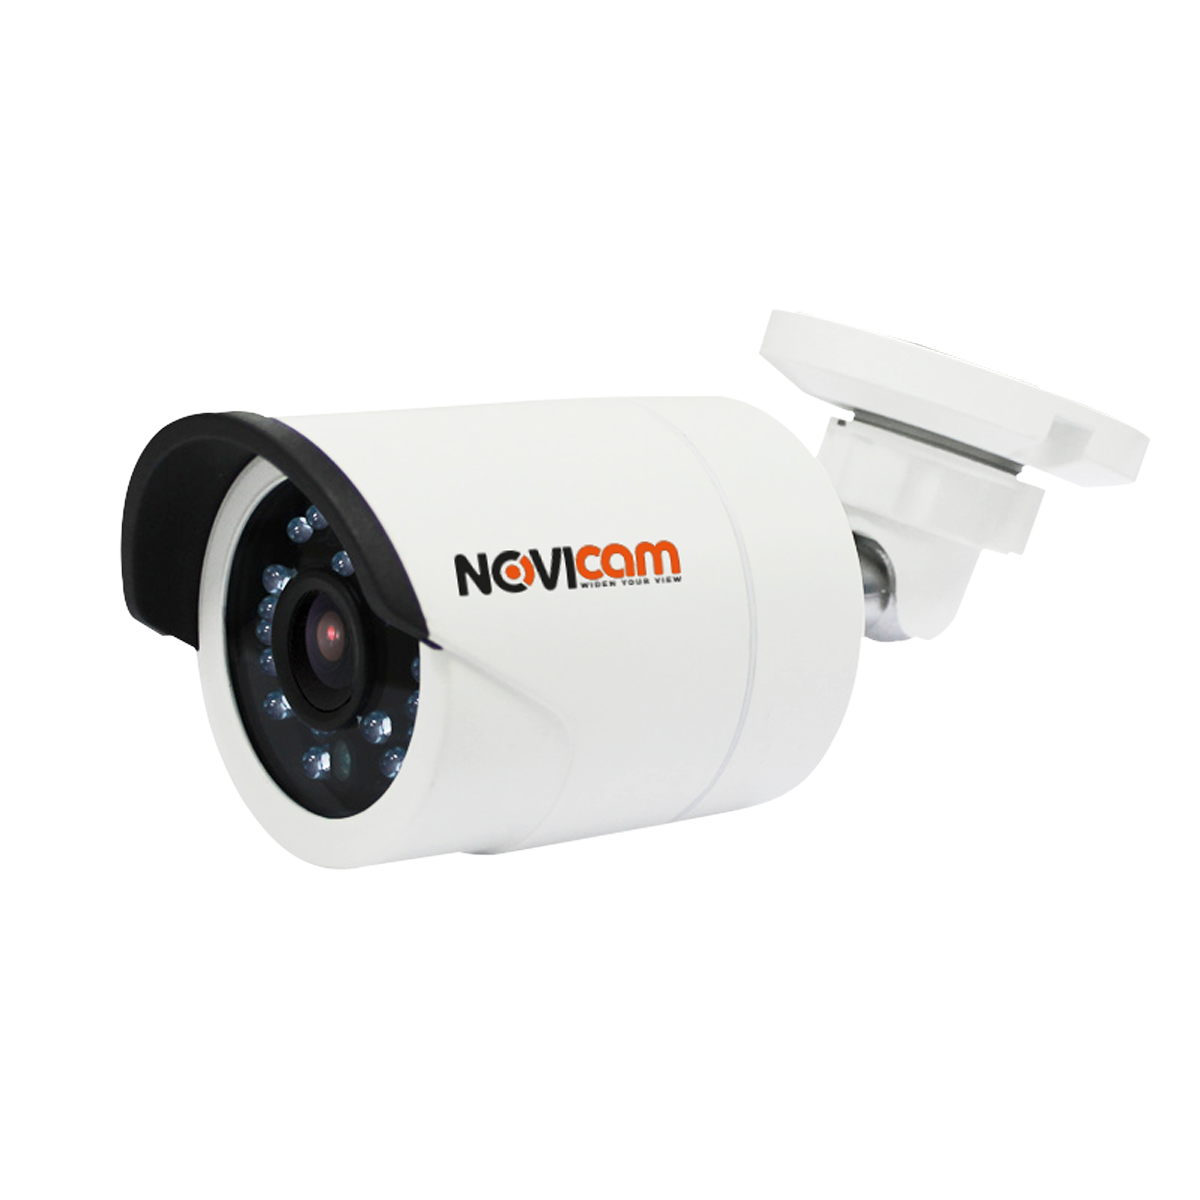 Всепогодная видеокамера NOVICAM ac13w. Видеокамера IP NOVICAM n39lwx. IP n23w NOVICAM (ver.1116) уличная всепогодная IP видеокамера. Видеокамера наружная NOVICAM Pro IP nc13wp.